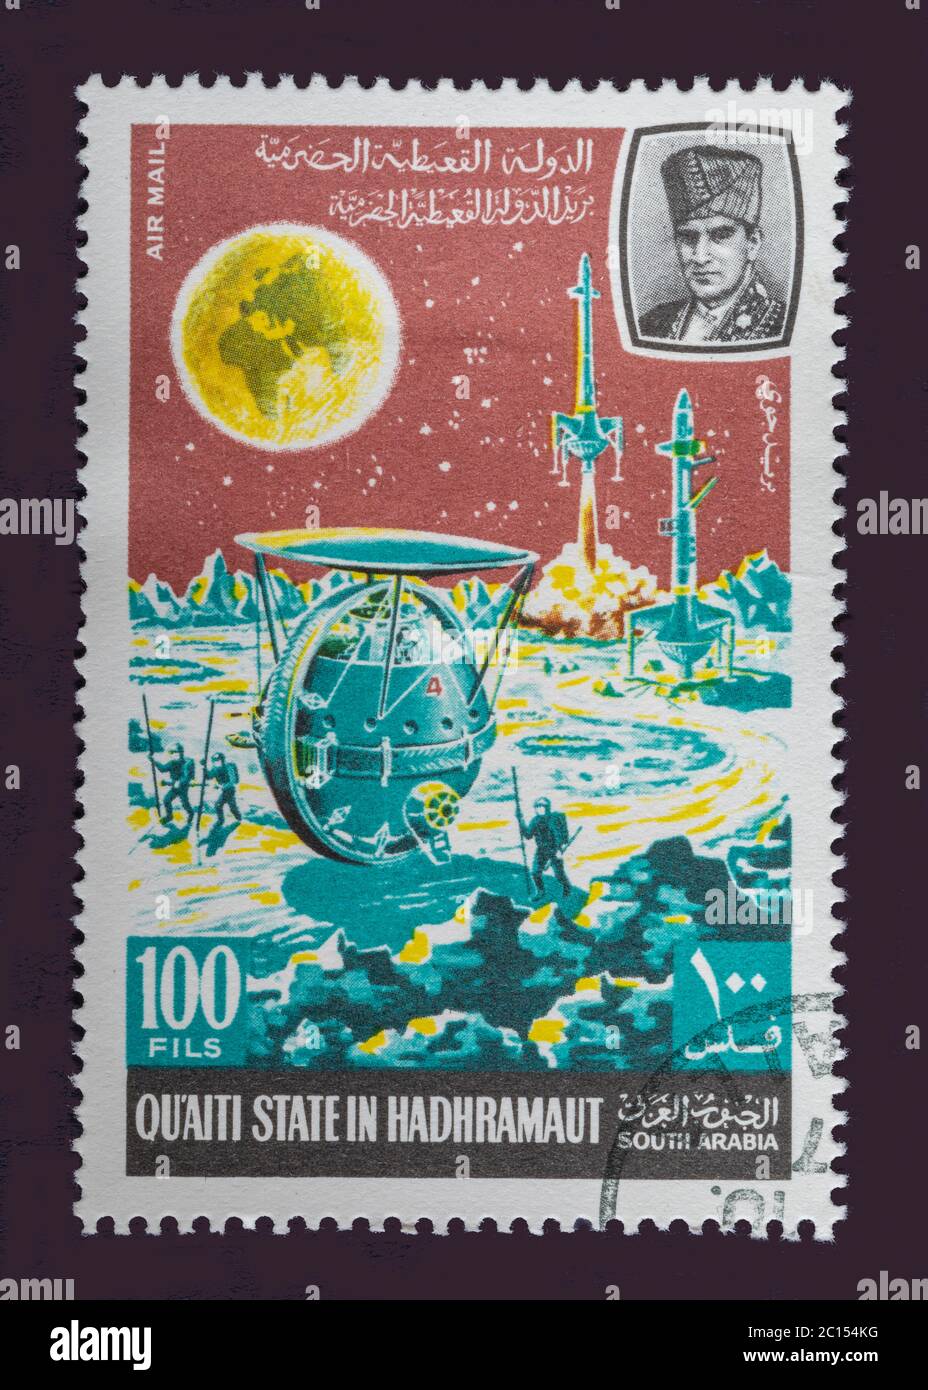 Uno di un set di sette francobolli d'epoca cancellati dallo Stato di Quaiti o dall'Arabia del Sud. Stamp Circa 1969 con scene dell'esplorazione dello spazio Foto Stock